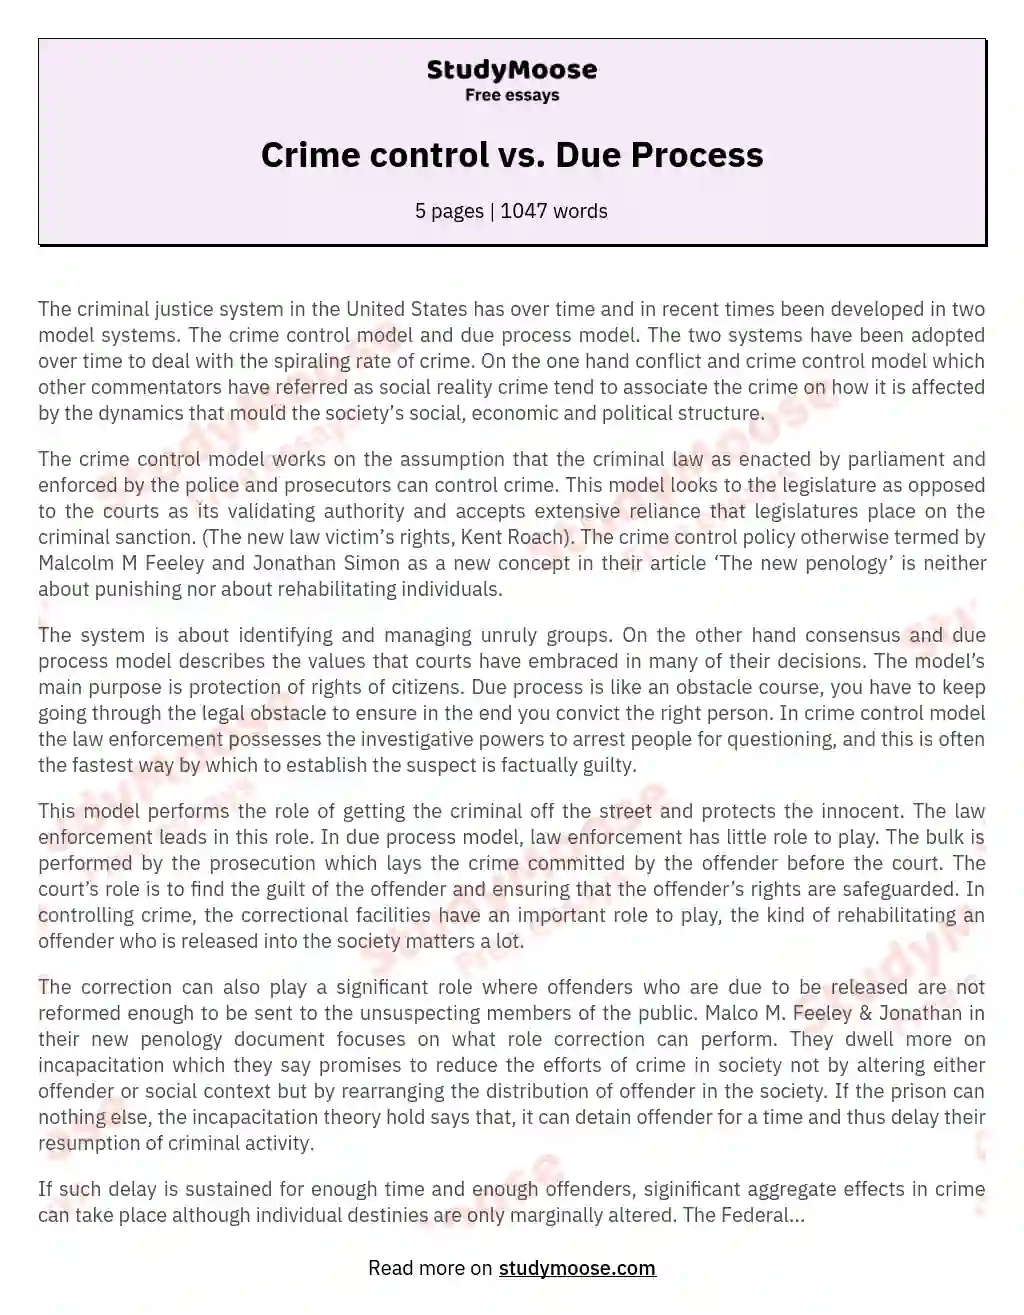 Crime control vs. Due Process essay